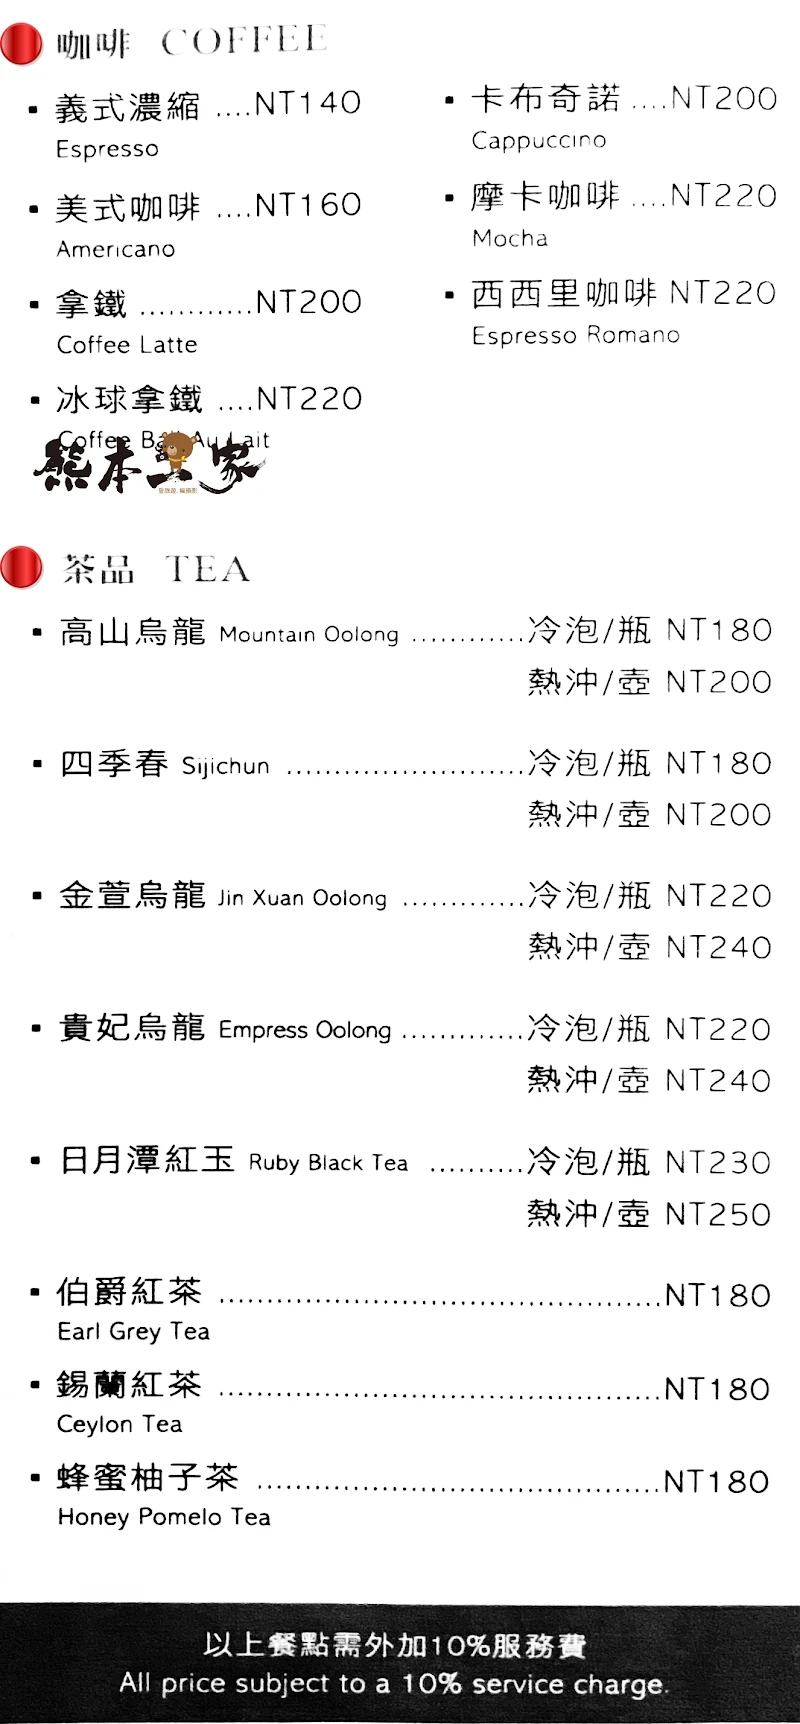 思鸝咖啡廳馥蘭朵烏來渡假酒店MENU菜單（附蔬食選擇）放大清晰版詳細分類資訊